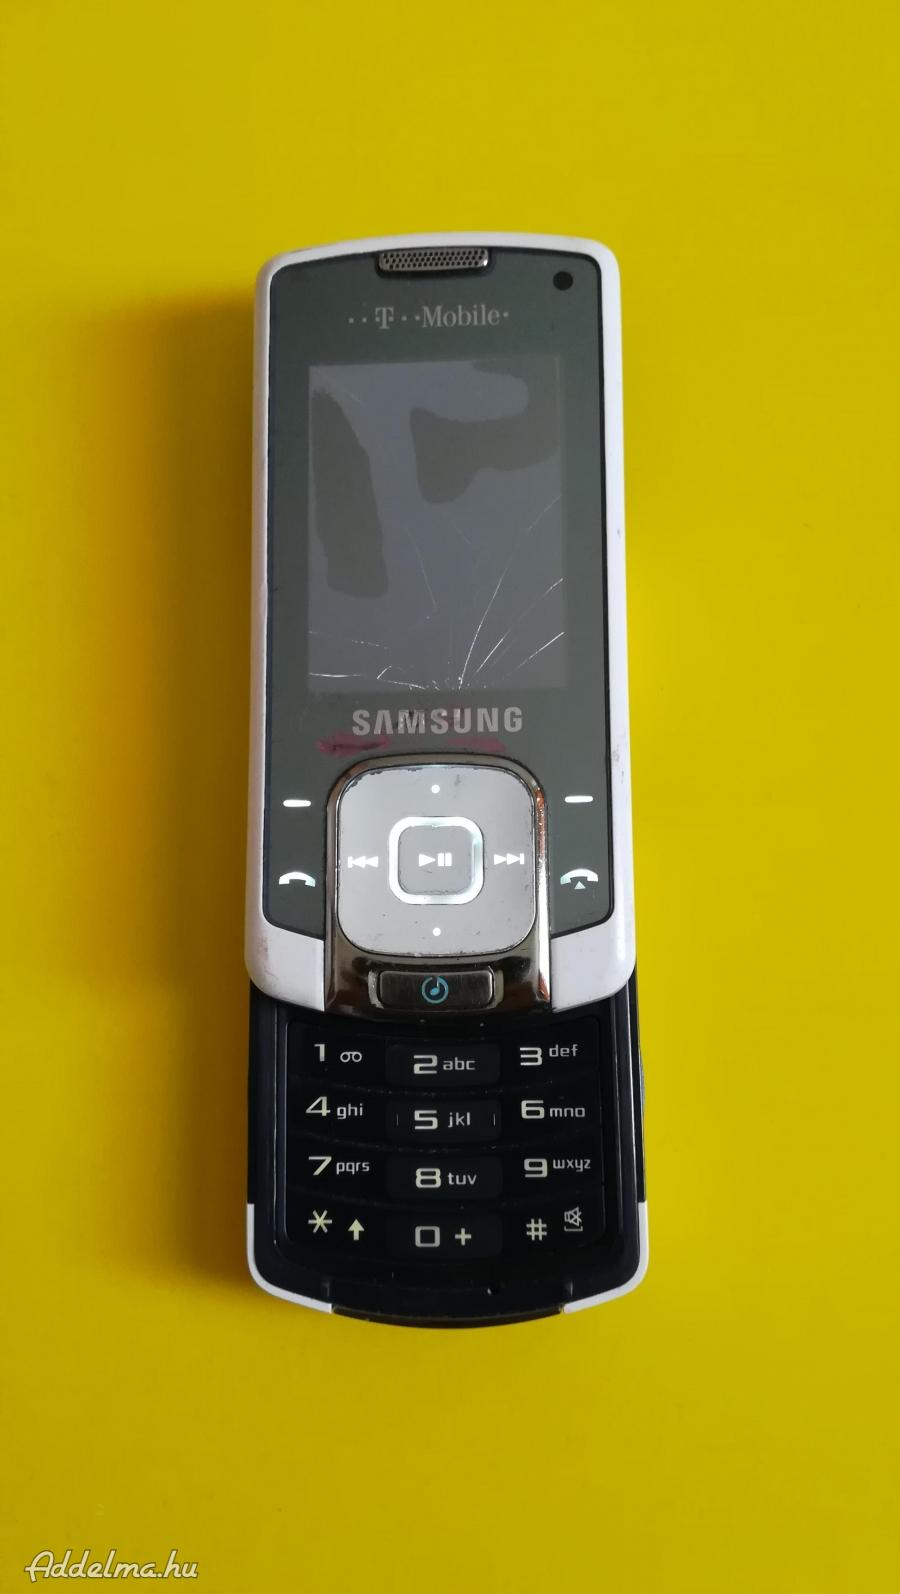 Samsung f330 mobil egyik törött kijelzős a másik térerő .